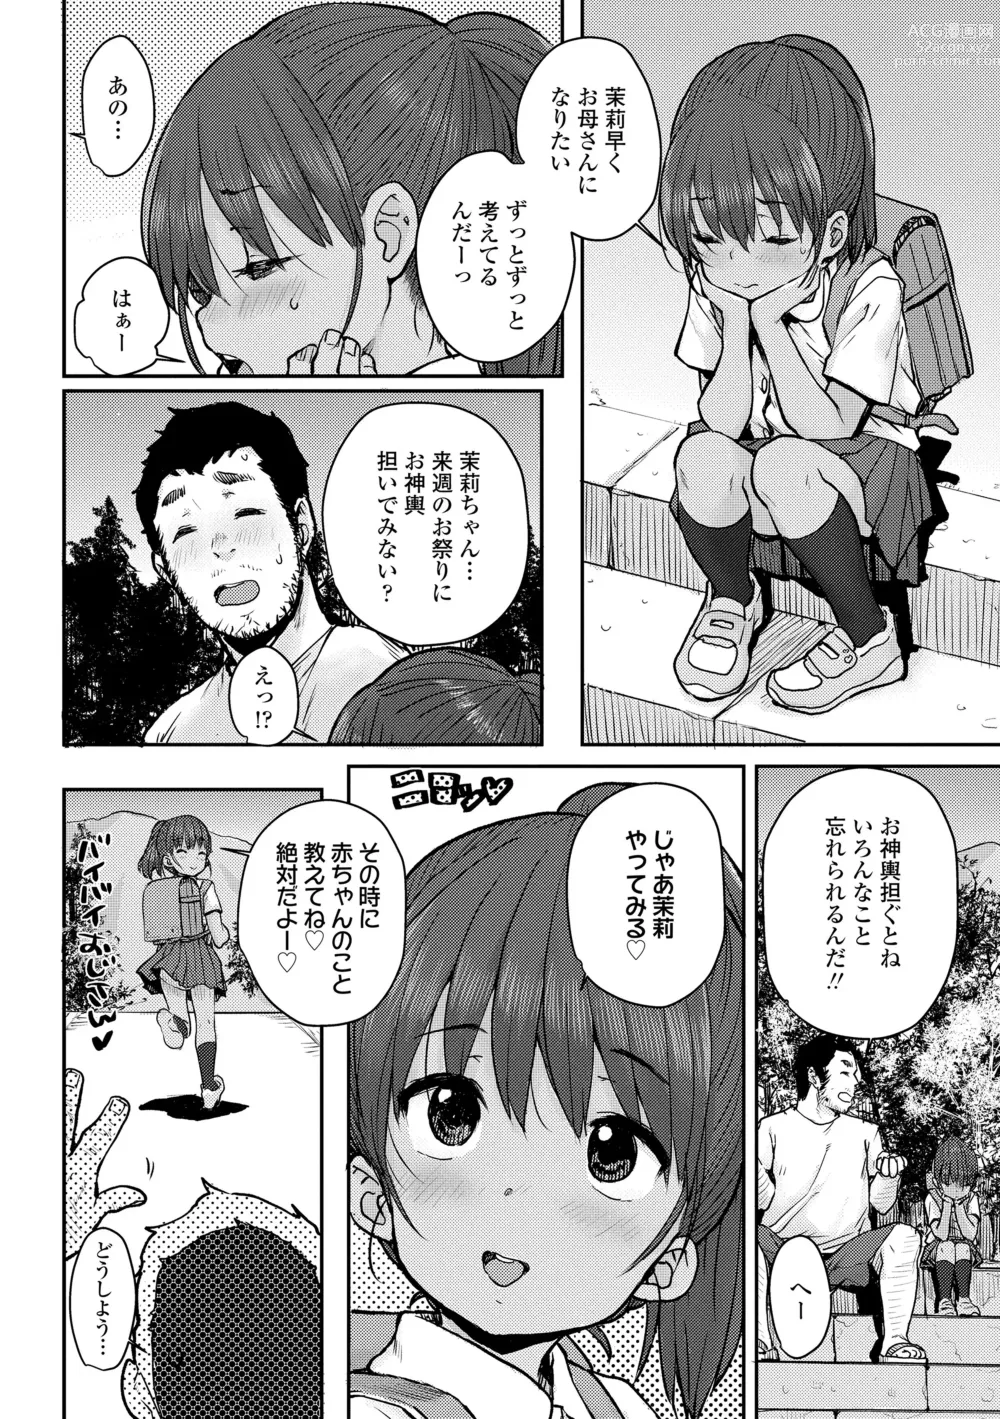 Page 10 of manga Love Love Dakko Shiyo - Love Love hug me